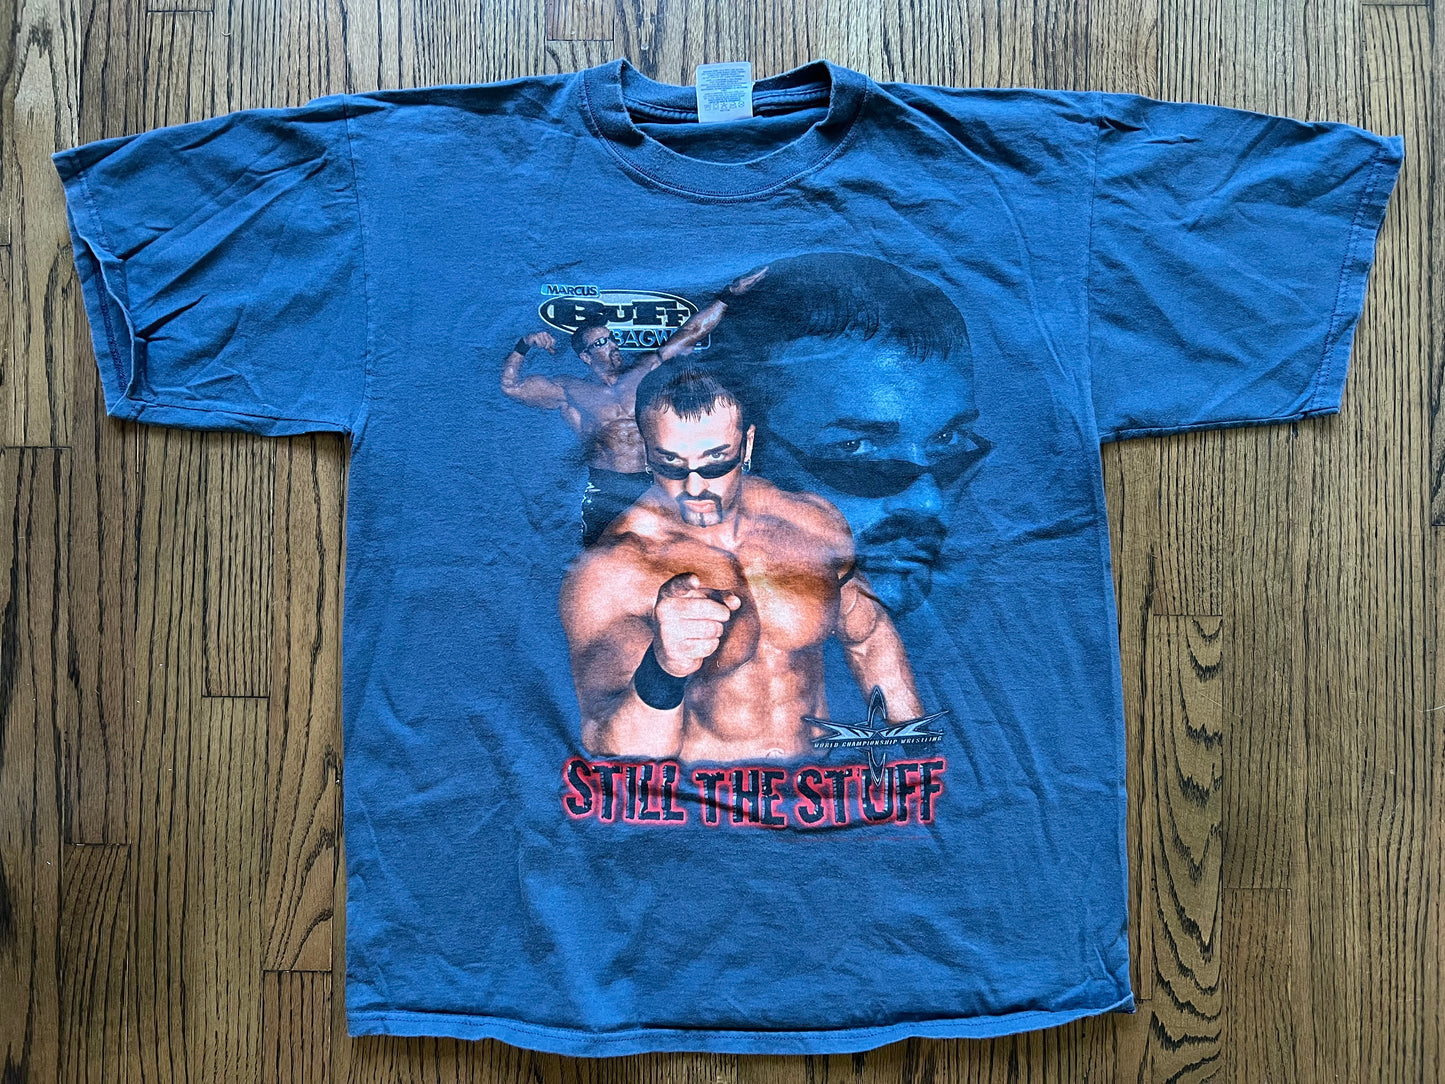 1999 WCW Buff Bagwell “Buff Is The Stuff” shirt